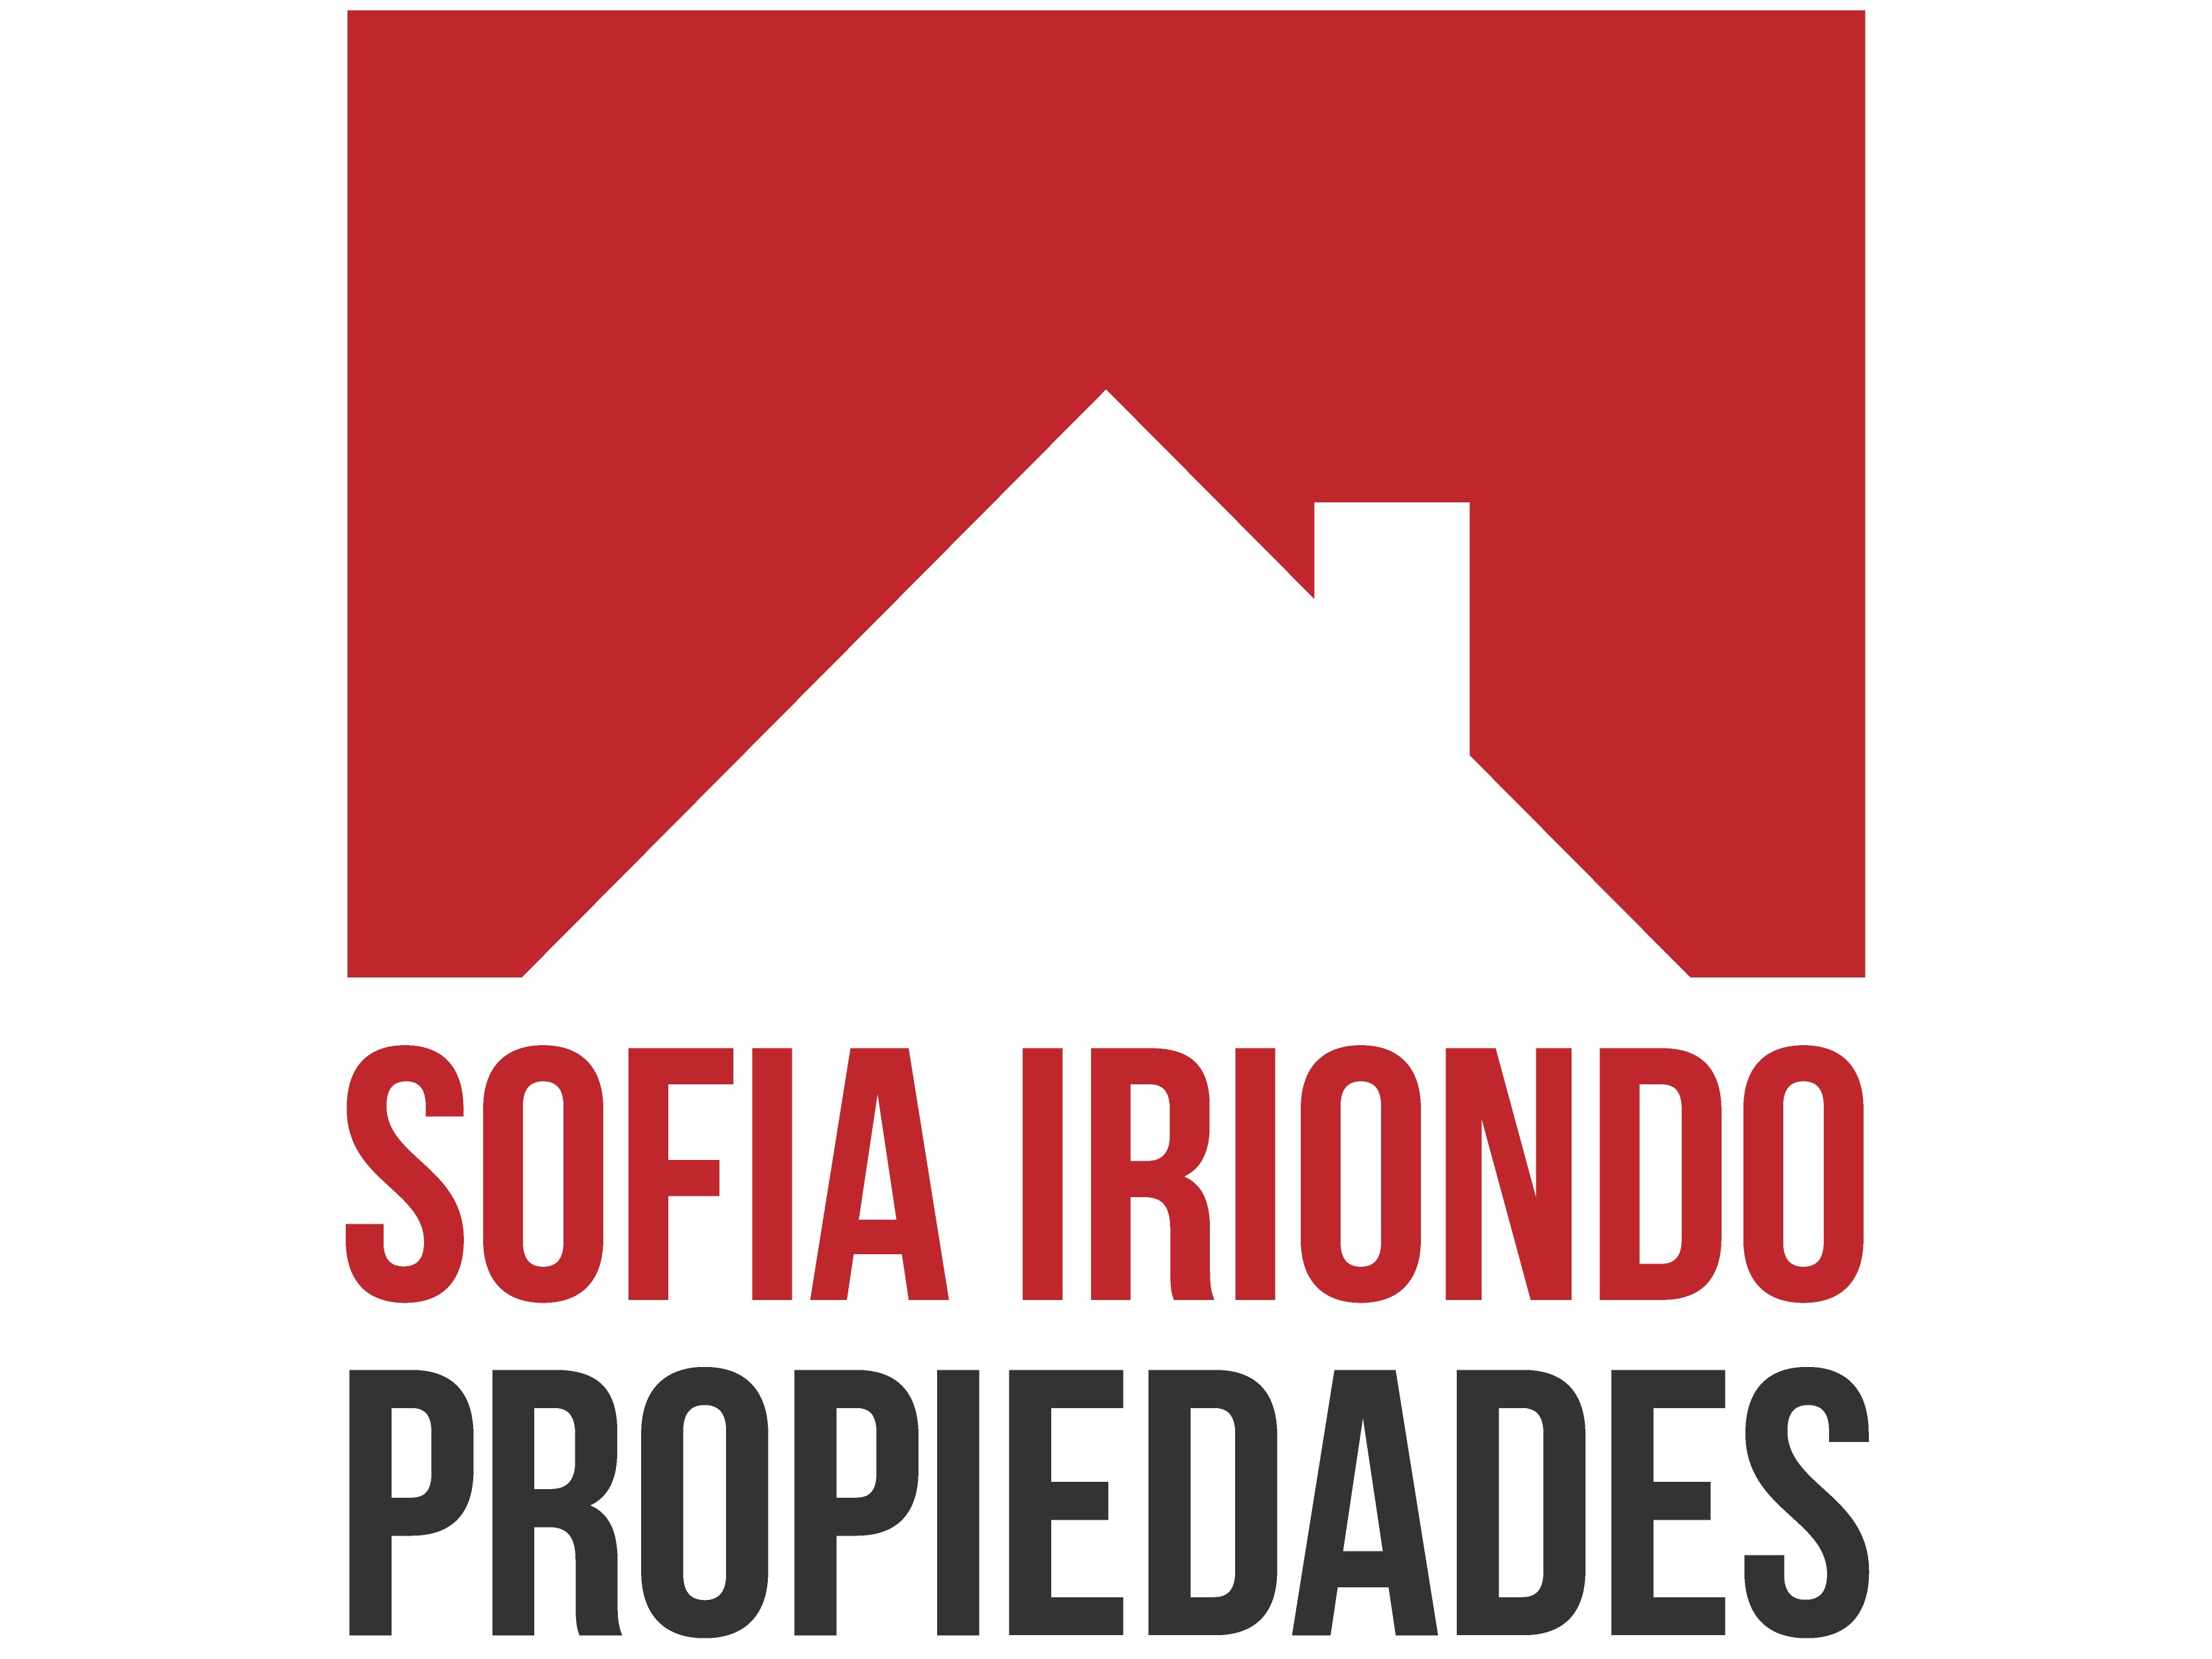 Sofia Iriondo Propiedades